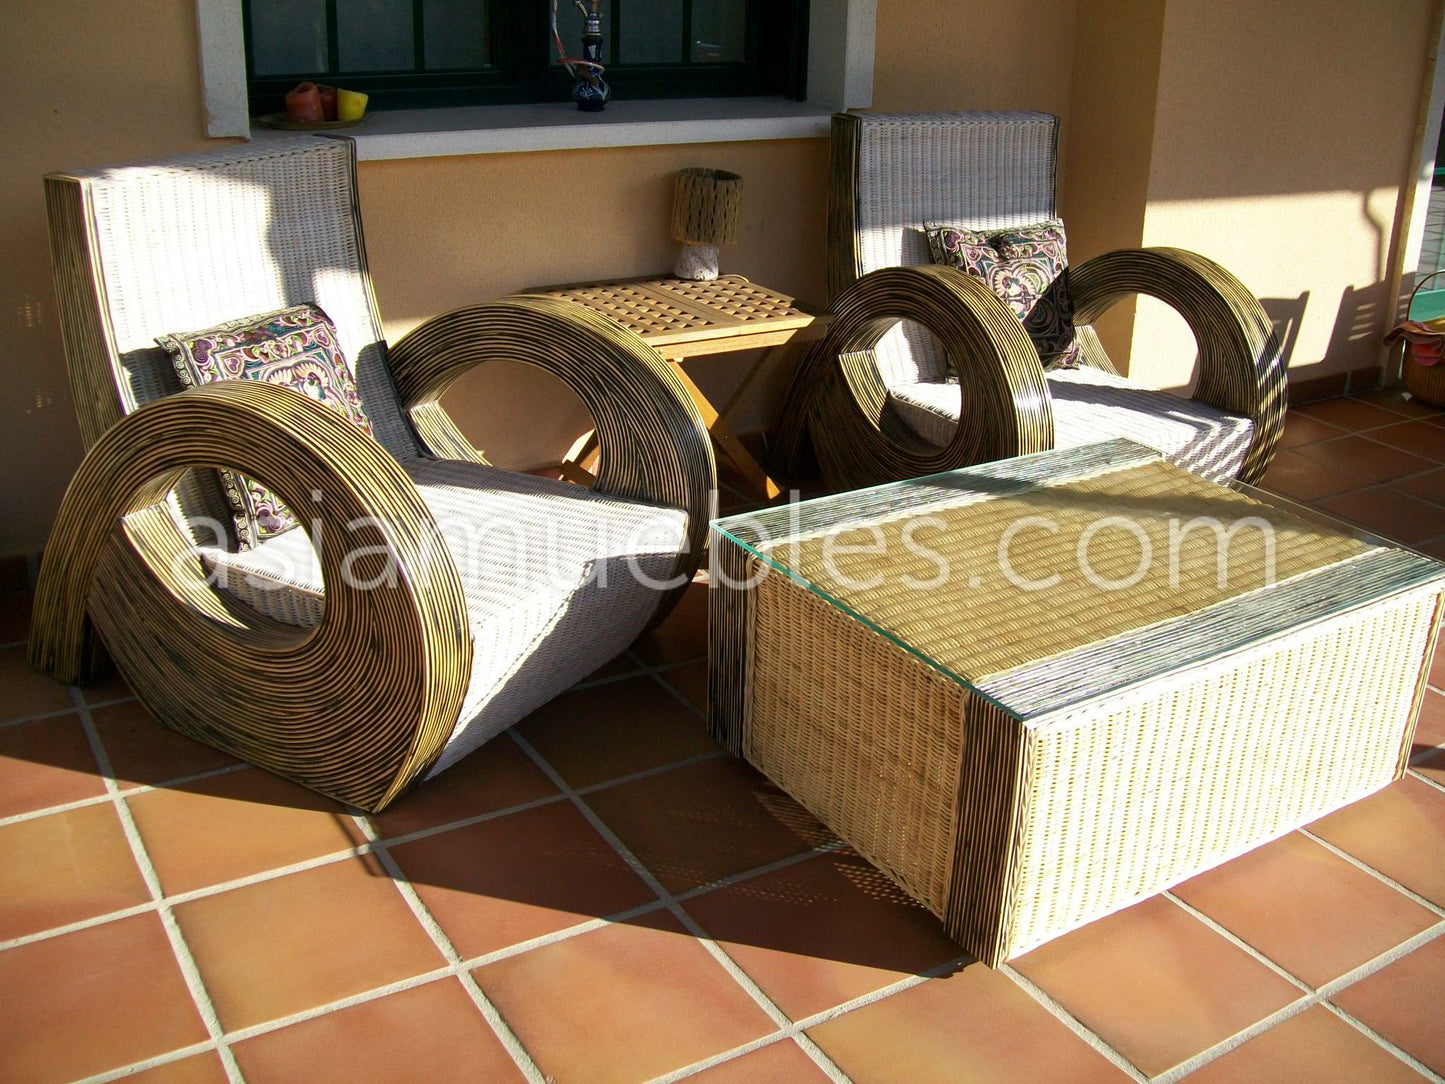 Muebles de jardín fibras naturales